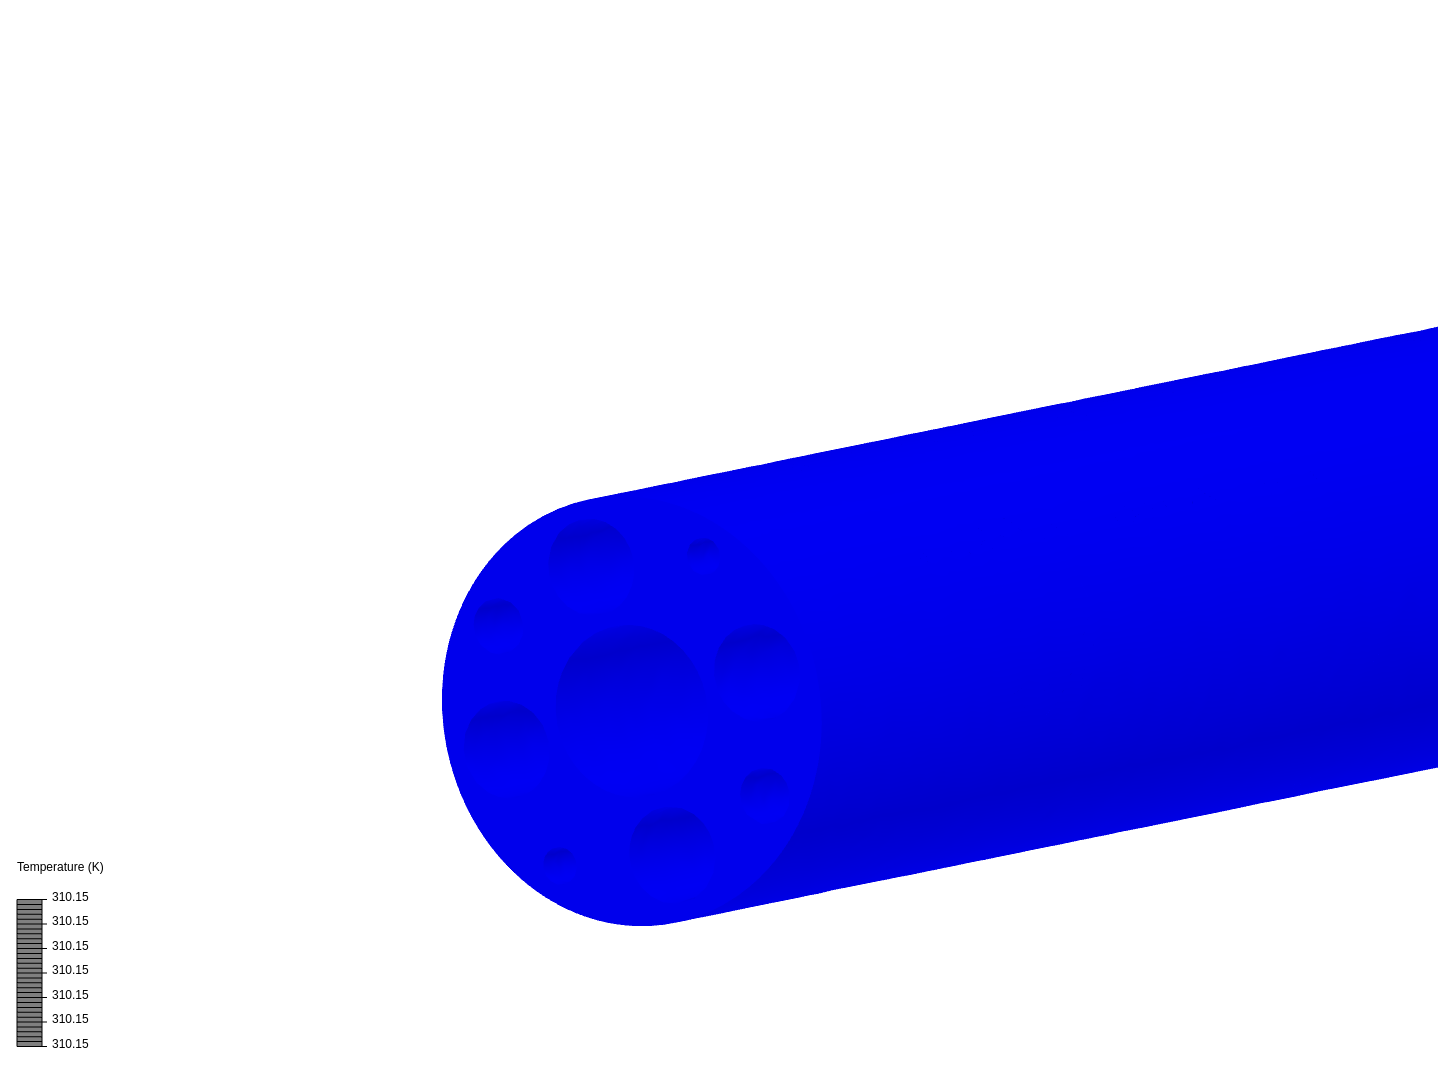 HT LHC_V03 image